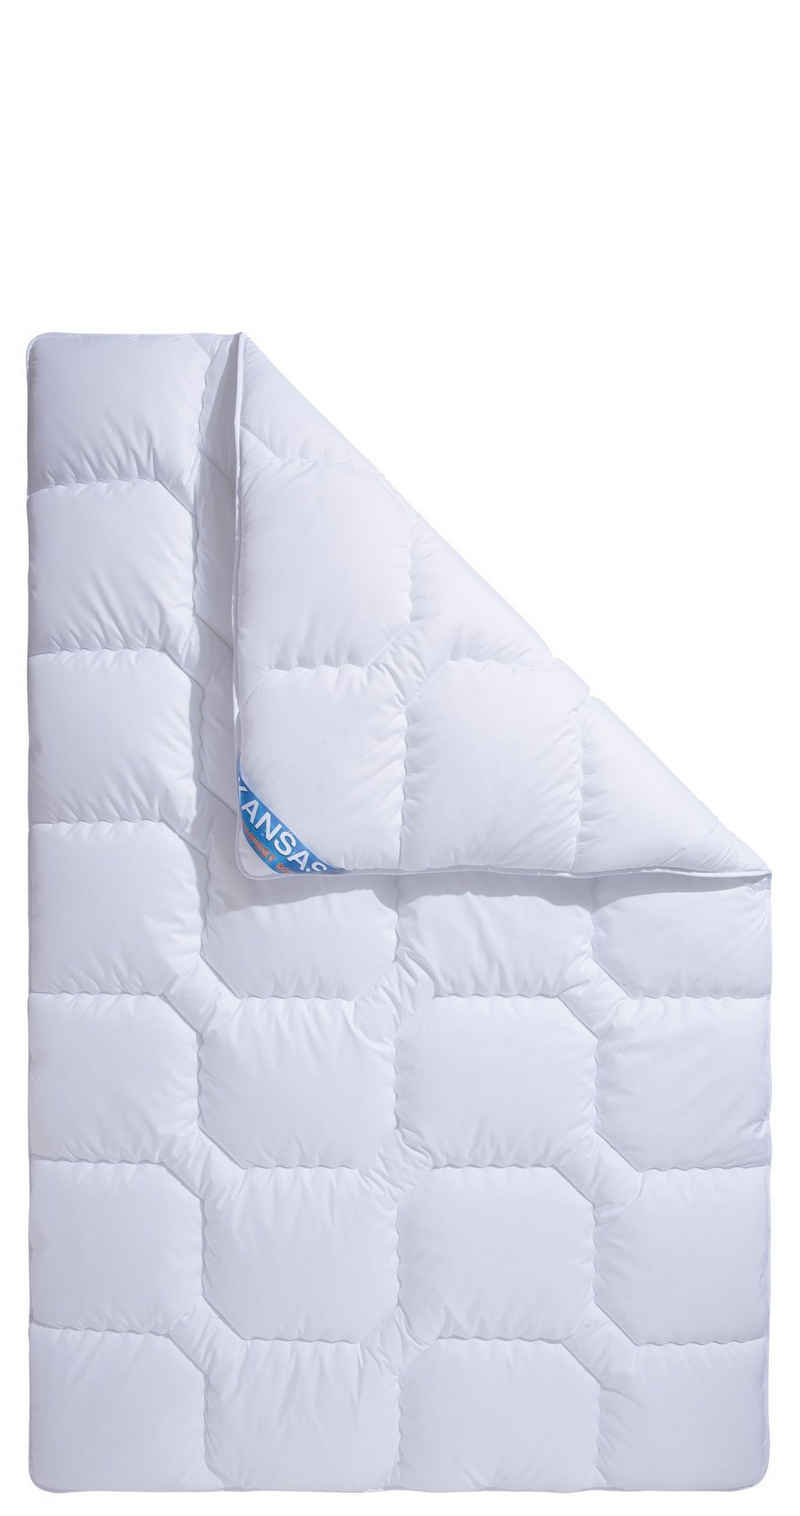 Microfaserbettdecke, Kansas, f.a.n. Schlafkomfort, Füllung: Polyesterfaser, Bezug: 100% Polyester, Bettdecke in 135x200 cm und weiteren Größen, für Sommer oder Winter